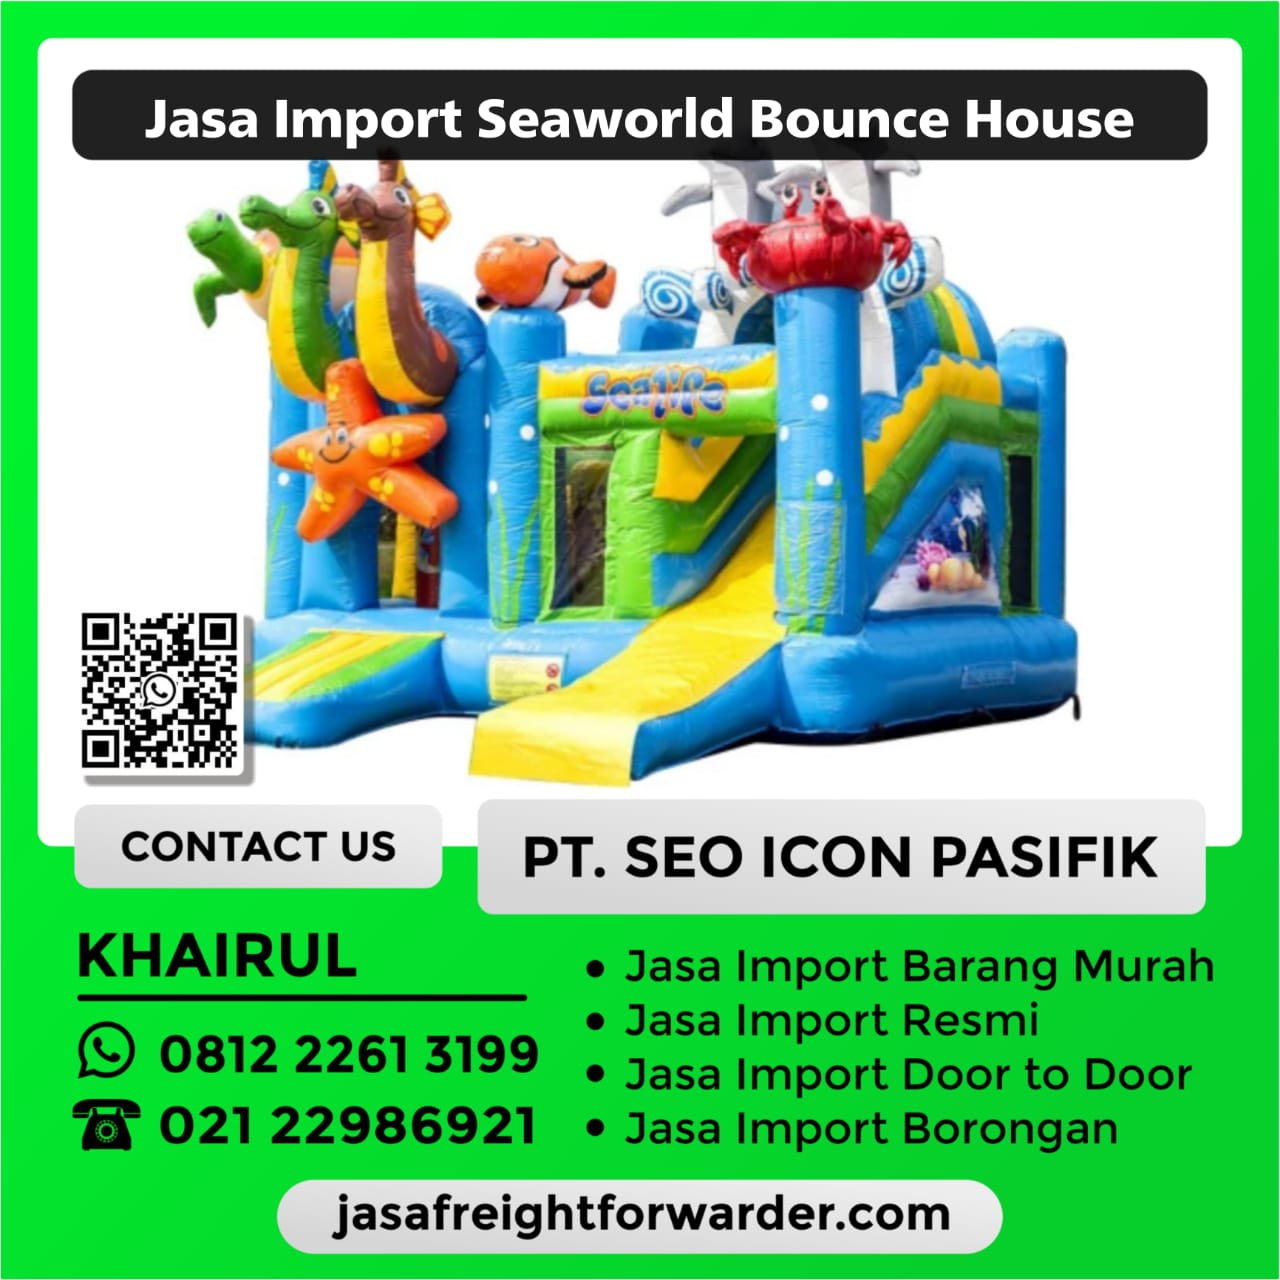 Jasa-Import-Seaworld-Bounce-House.jpeg